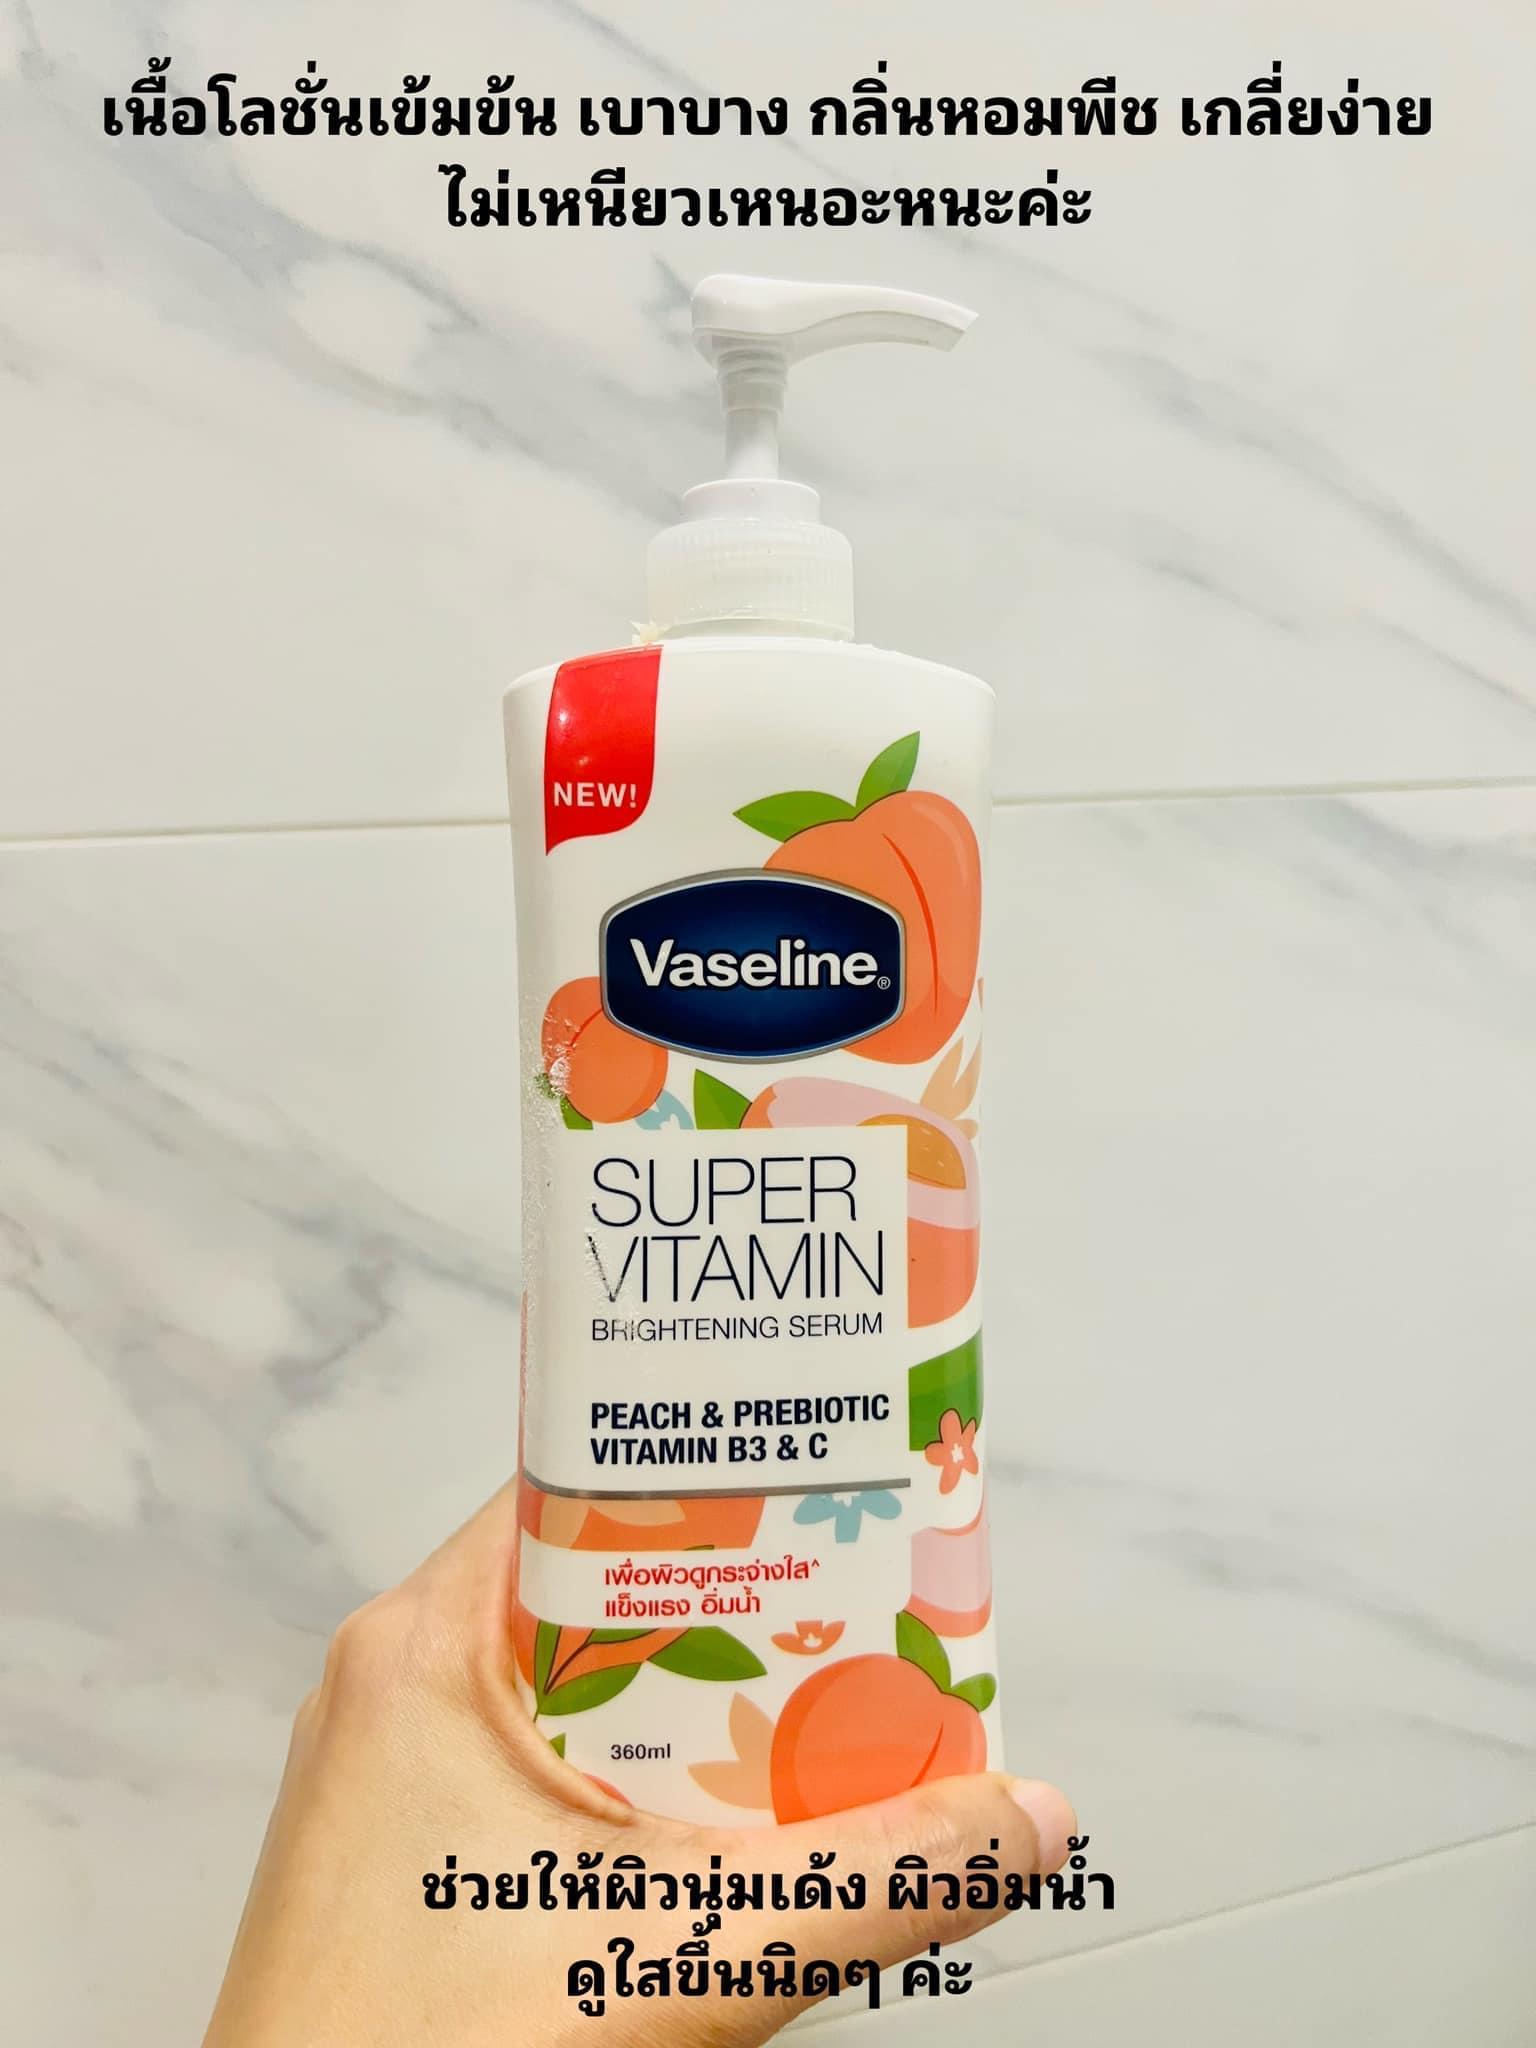 ภาพหน้าปก โลชั่นกลิ่นพีช Vaseline super vitamin peach & prebiotic หอมติดผิว ที่:0